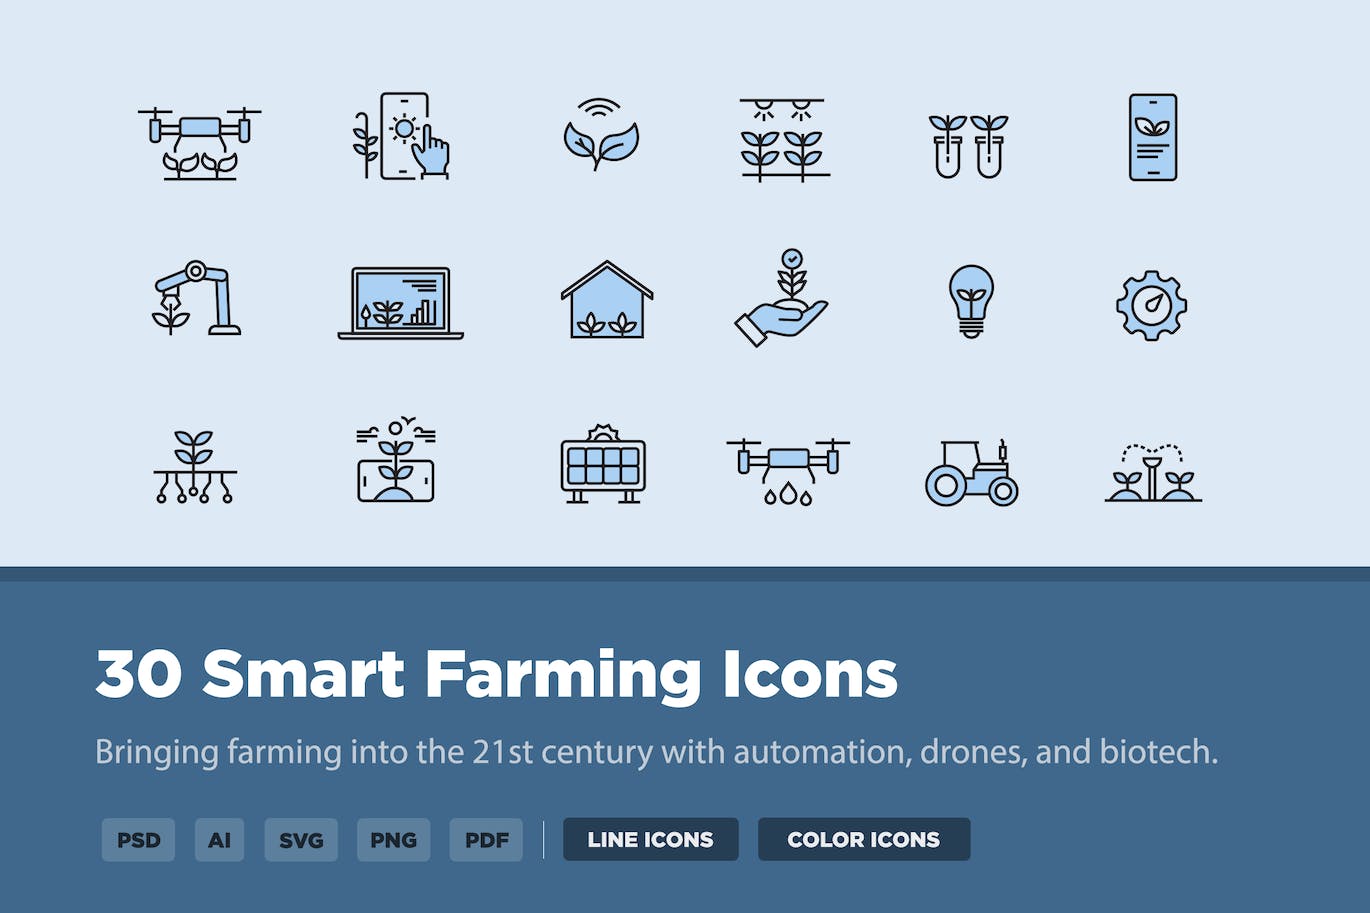 30个智能农业矢量图标 30 Smart Farming Icons 图标素材 第1张